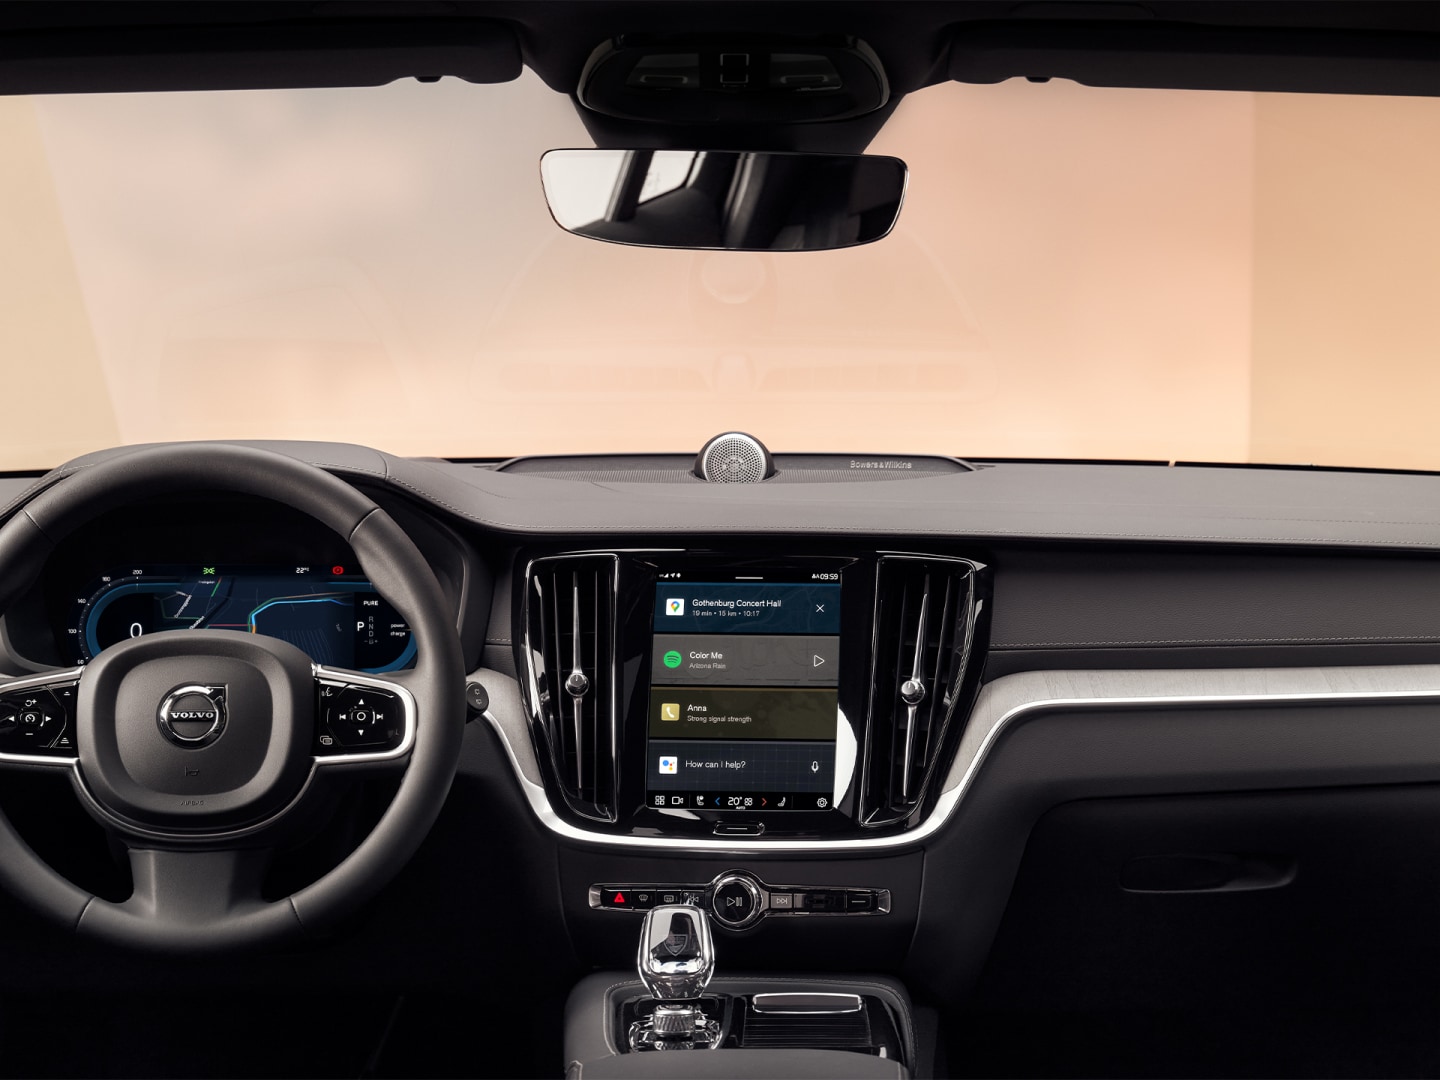 Volant, přístrojová deska a dotykový displej s rozhraním infotainment systému plug-in hybridního vozu Volvo V60.